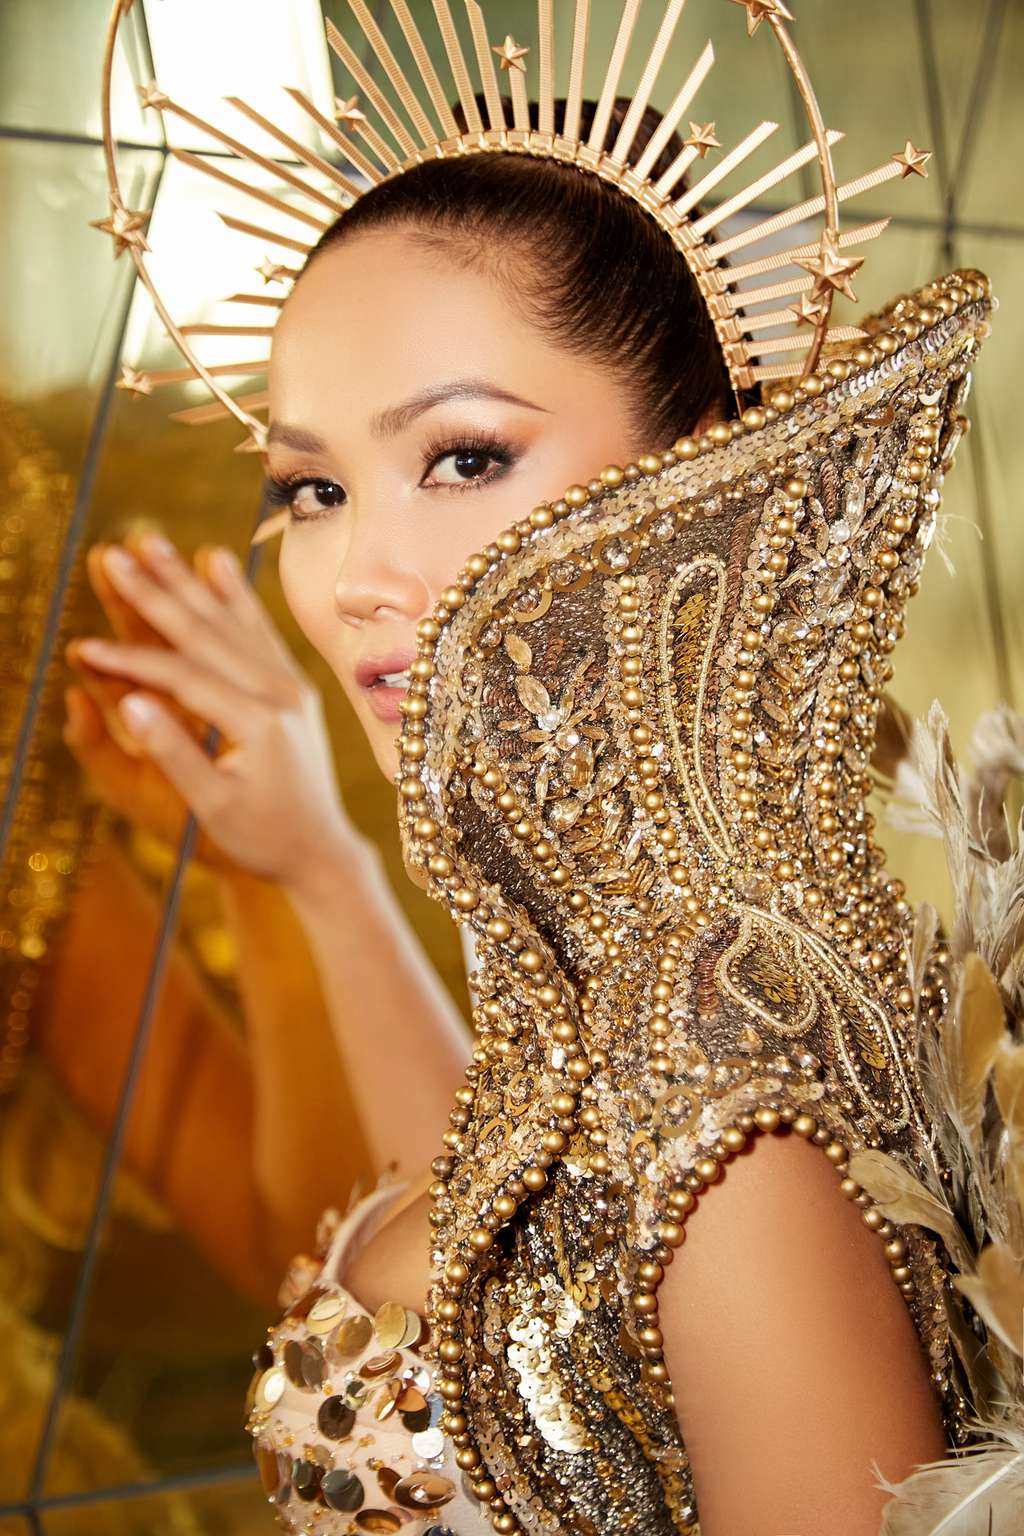 Thiết kế tôn vòng 1 căng đầy và body đẹp như tạc của Hoa hậu H'Hen Niê. Layout trang điểm của cô cũng xuất sắc với những nhấn nhá cực match với bộ cánh vương giả này.